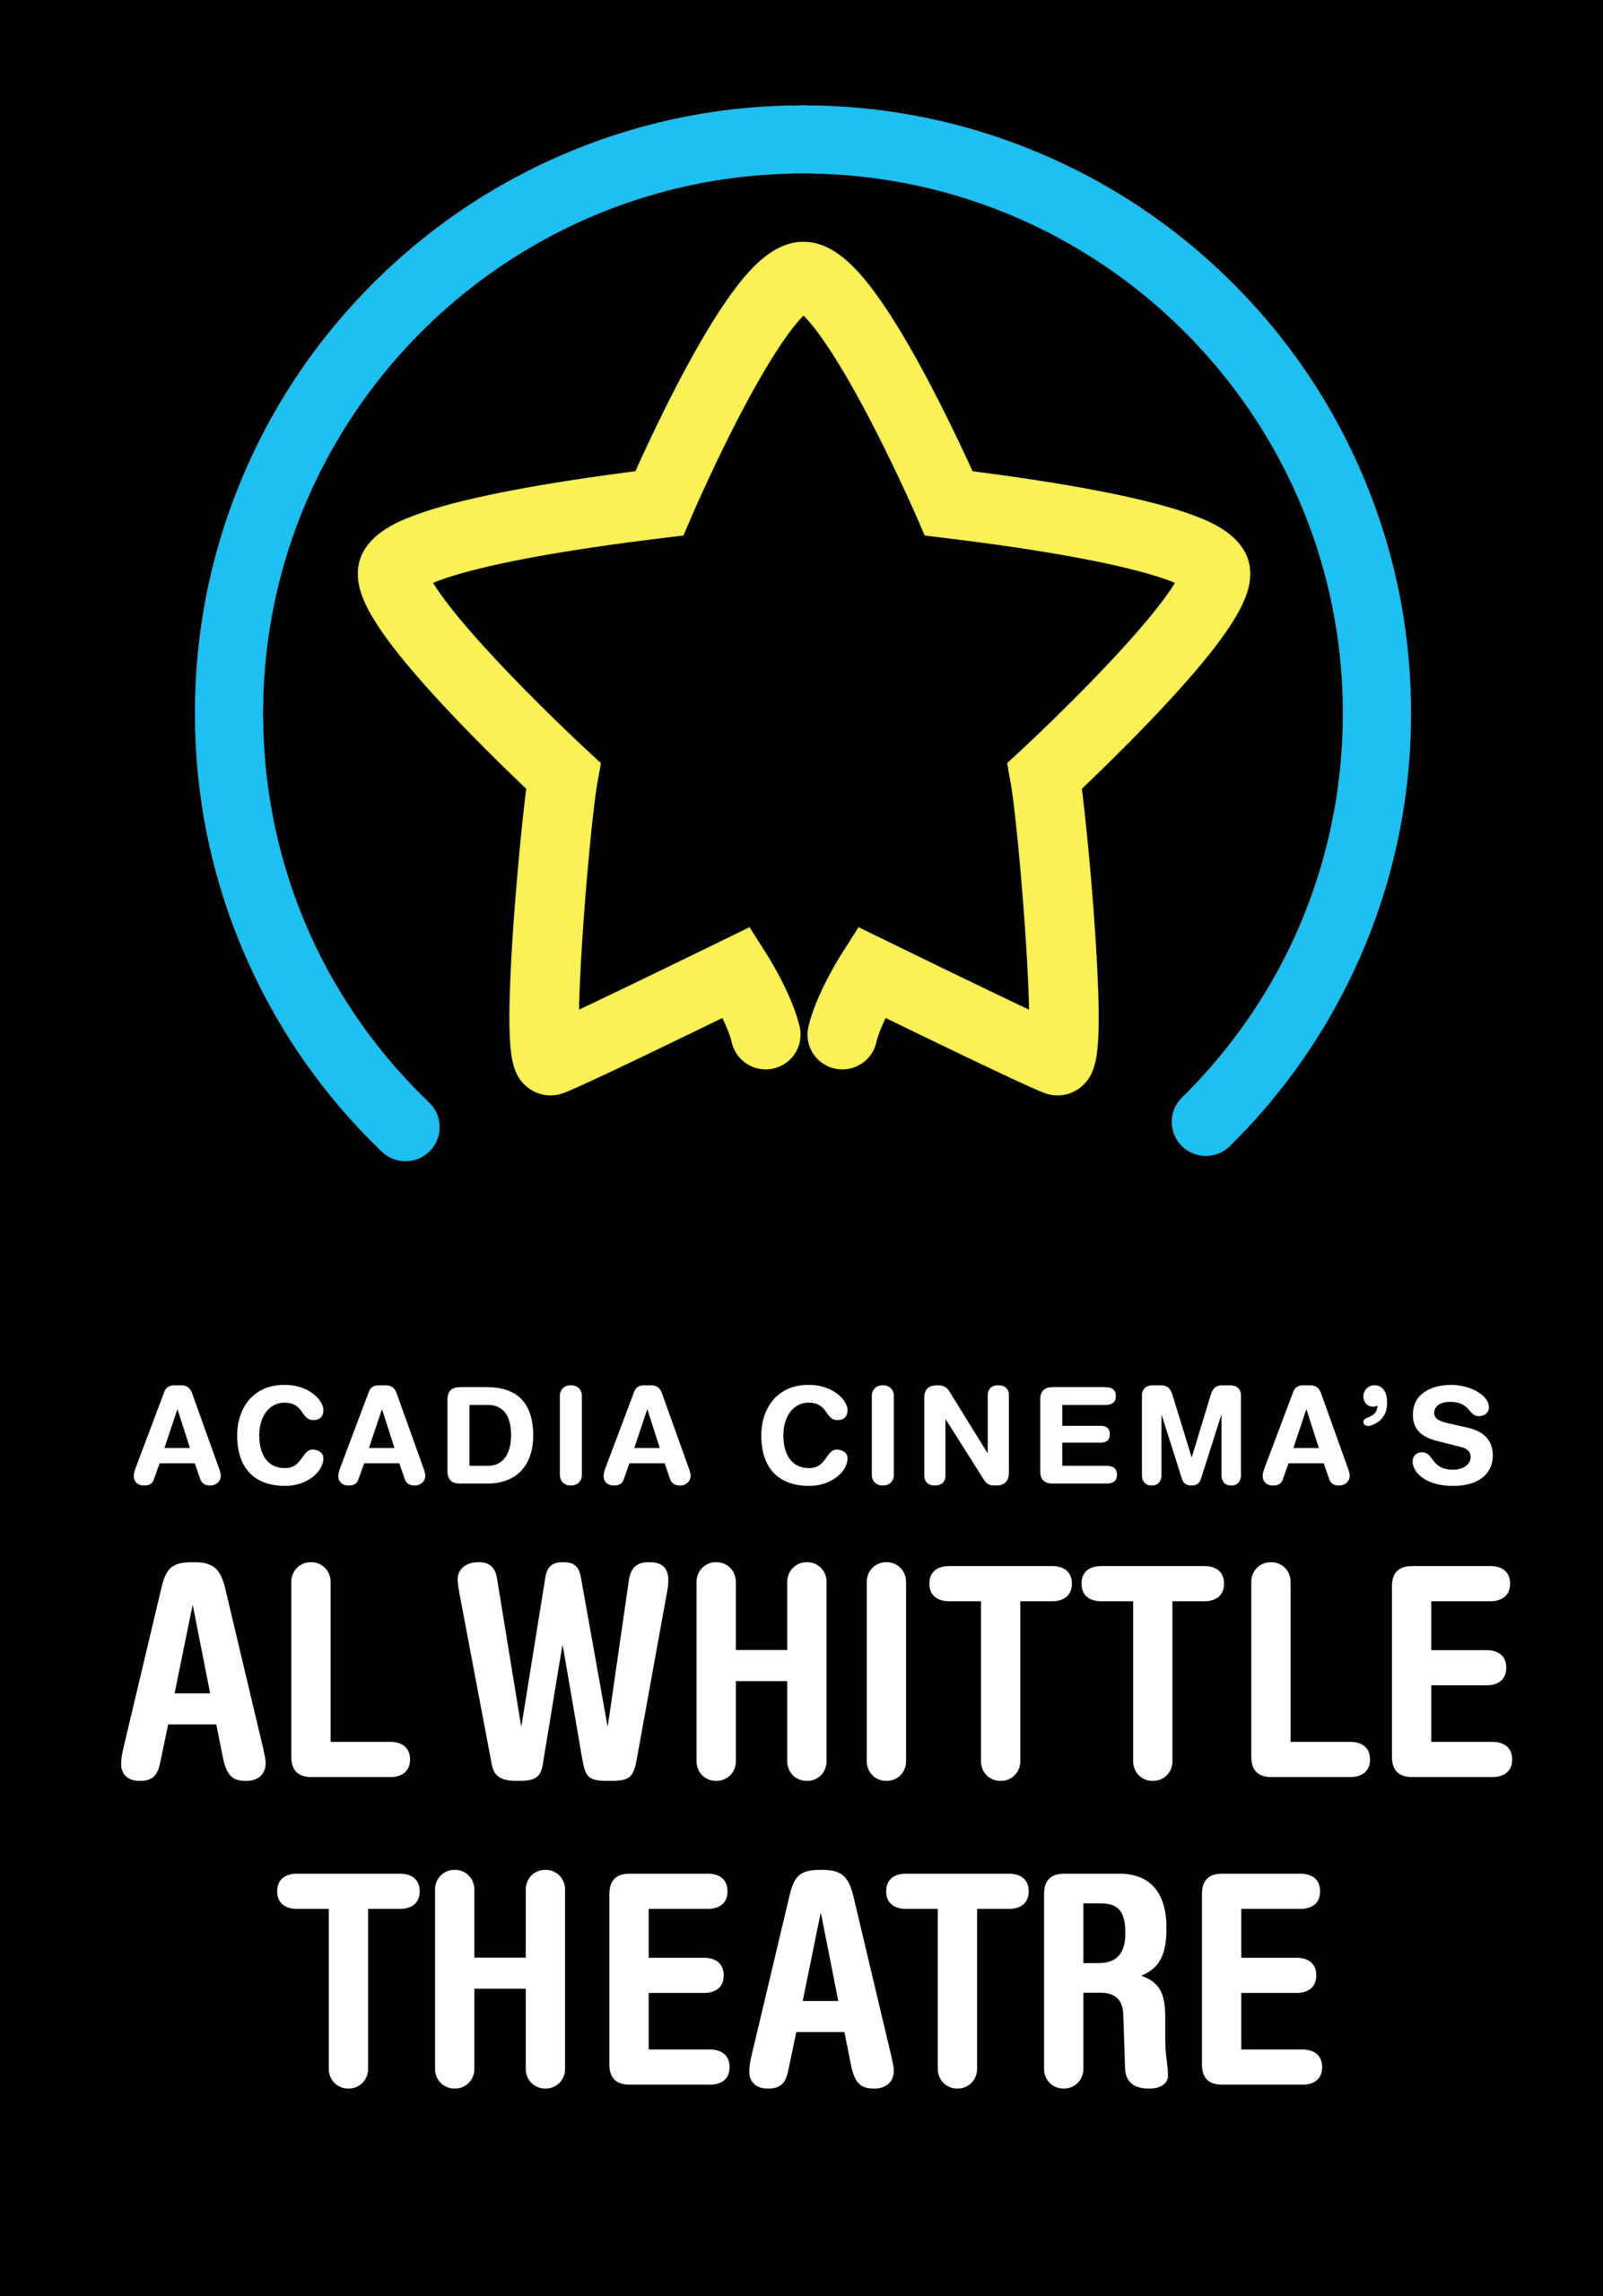 Al Whittle Theatre logo